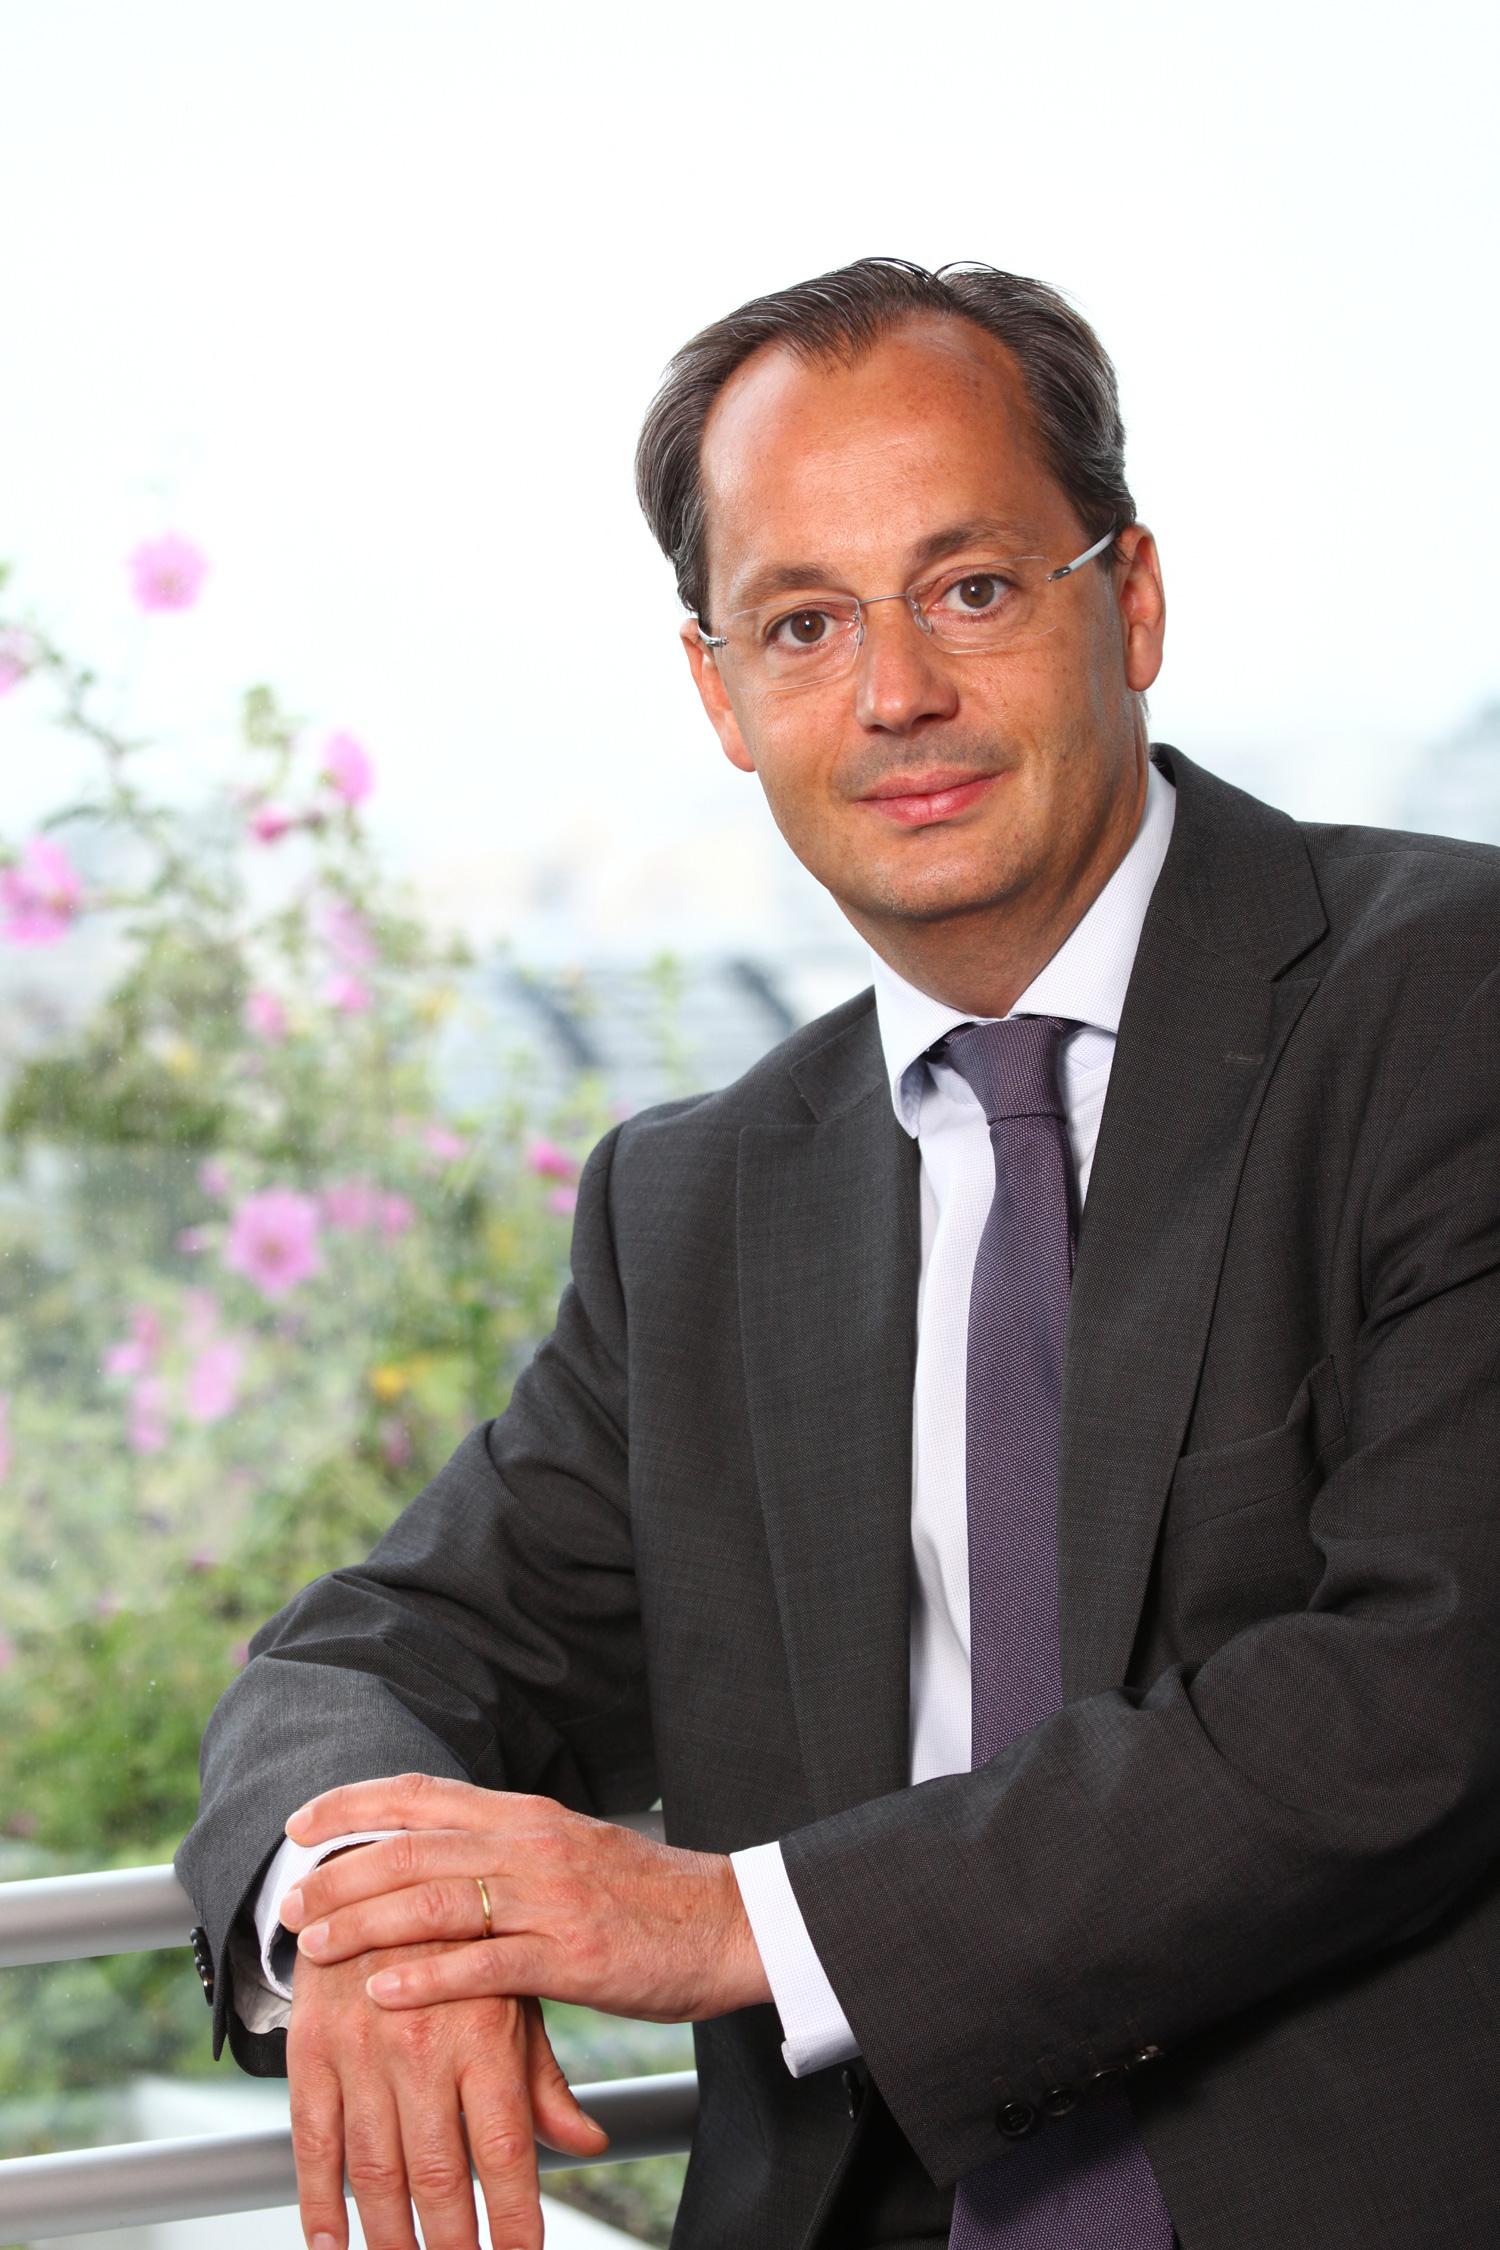 Jérôme Pécresse, CEO of GE Renewable Energy